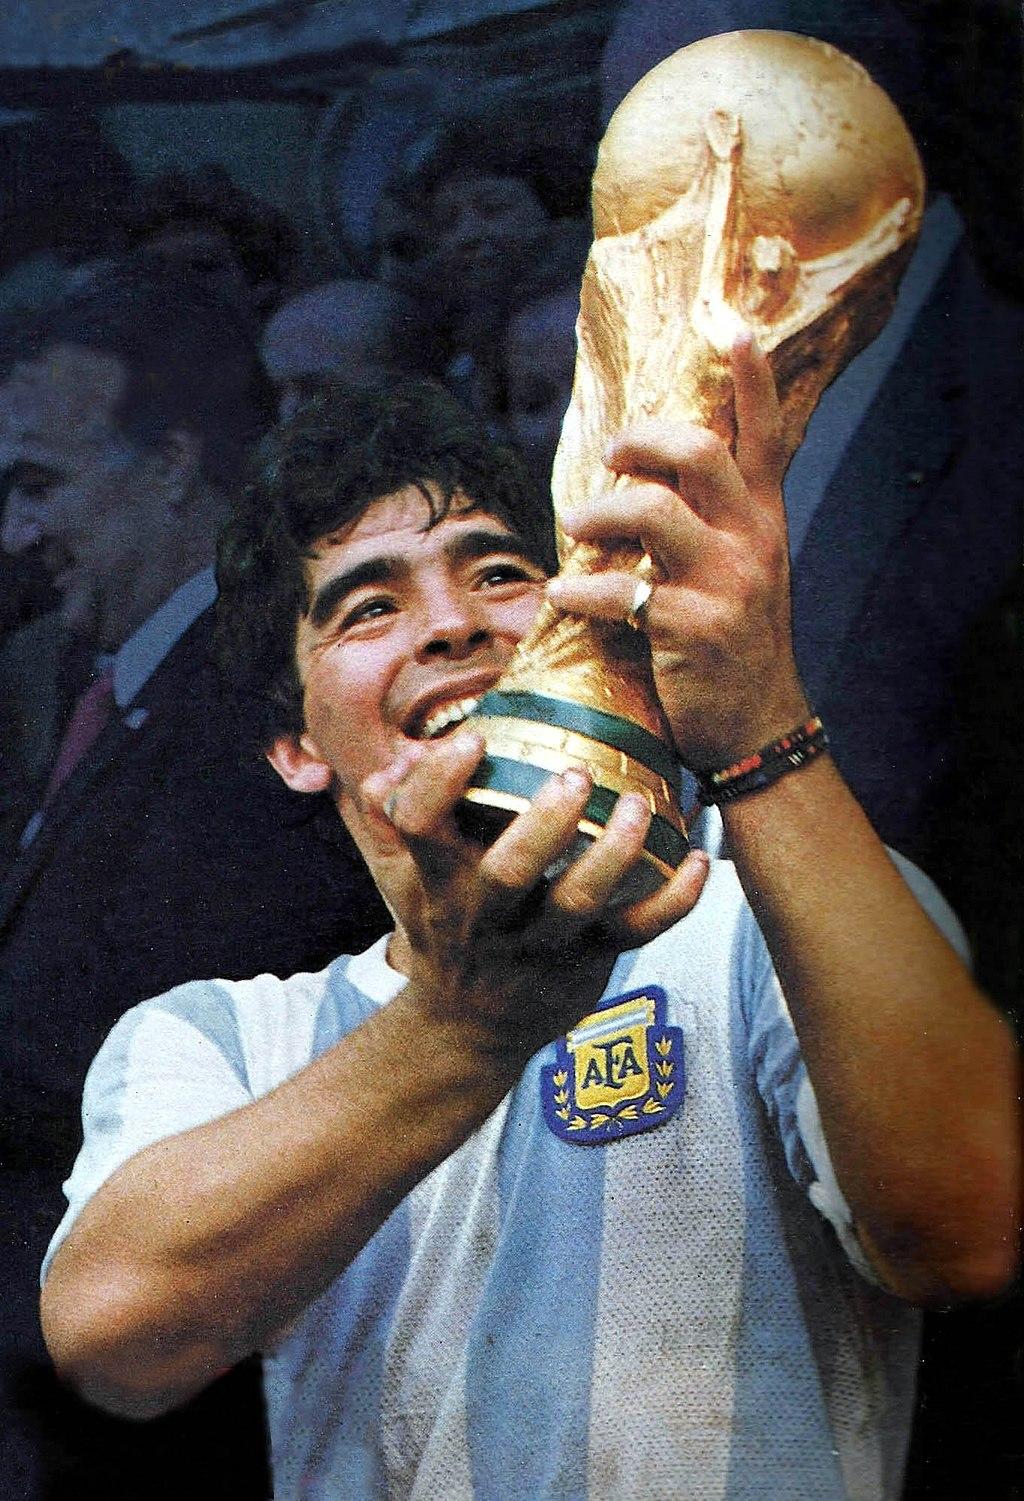  迭戈·阿曼多·马拉多纳（Diego Armando Maradona，1960年10月30日—2020年11月25日），出生于阿根廷布宜诺斯艾利斯，阿根廷著名足球运动员。1986年6月，马拉多纳率领阿根廷队获得世界杯冠军。 